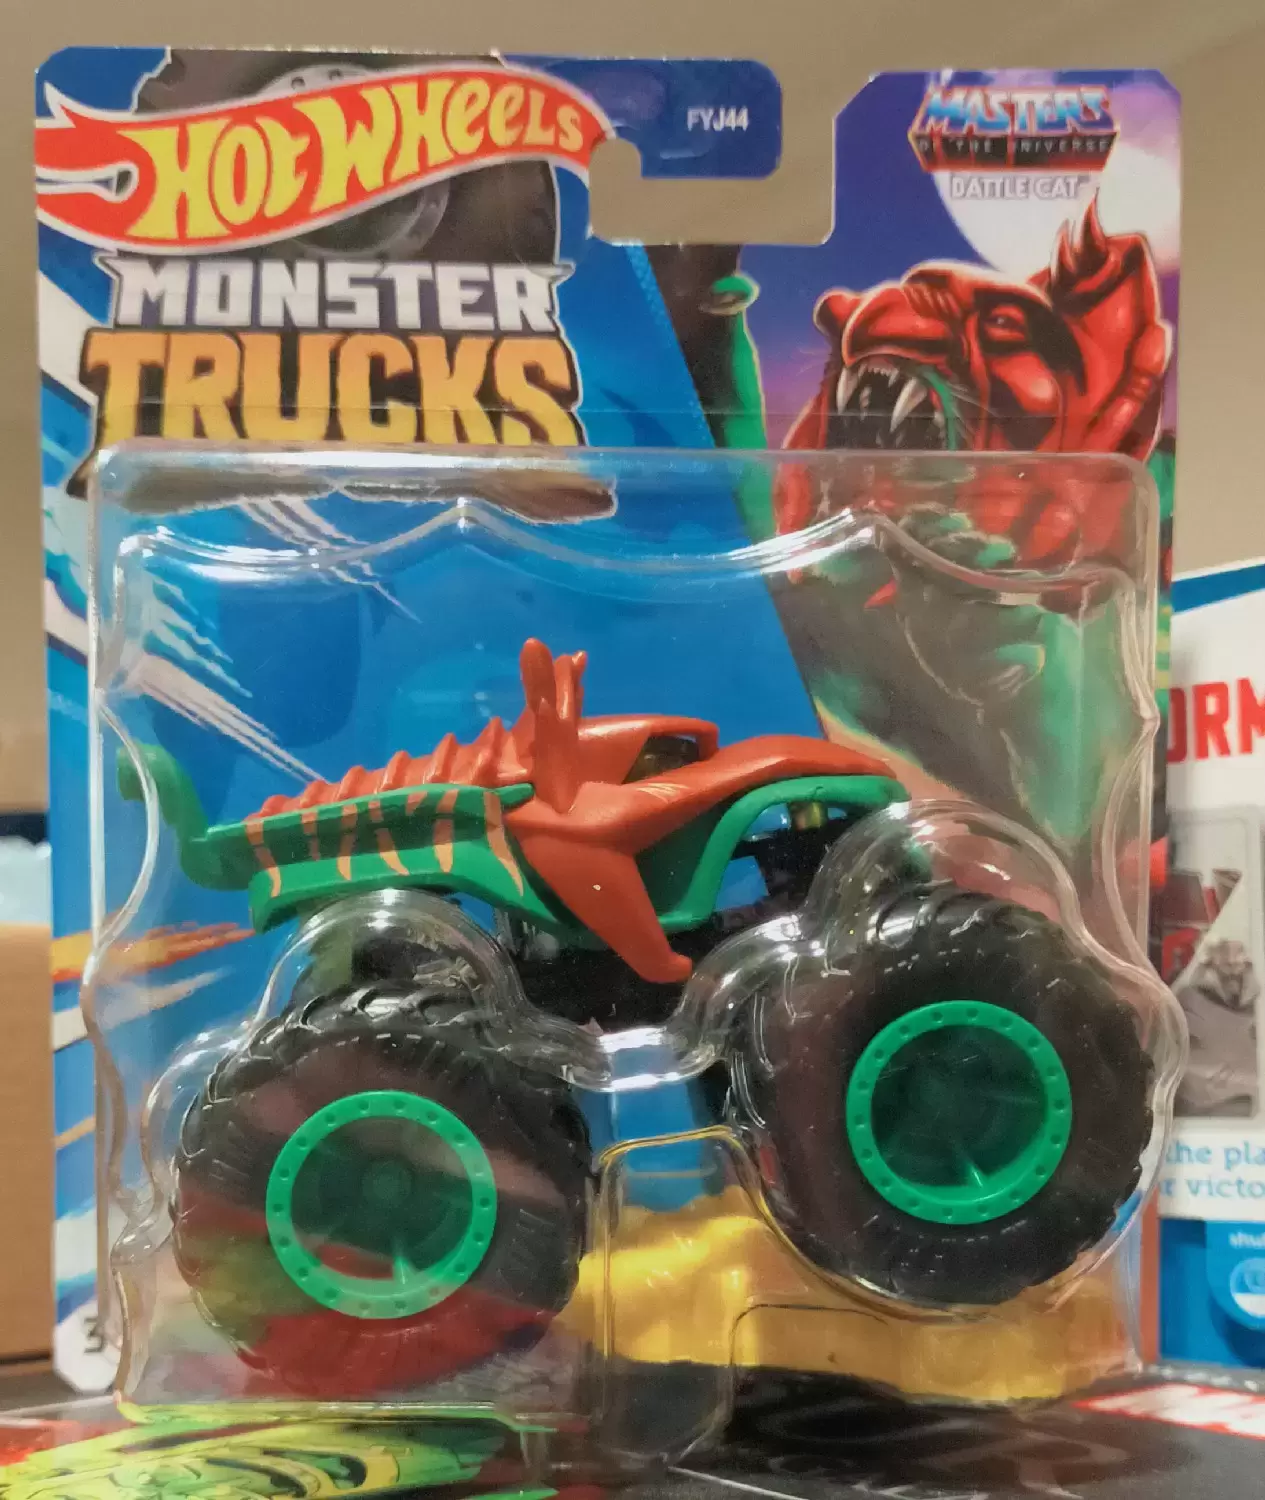 Monster Trucks - Battle Cat